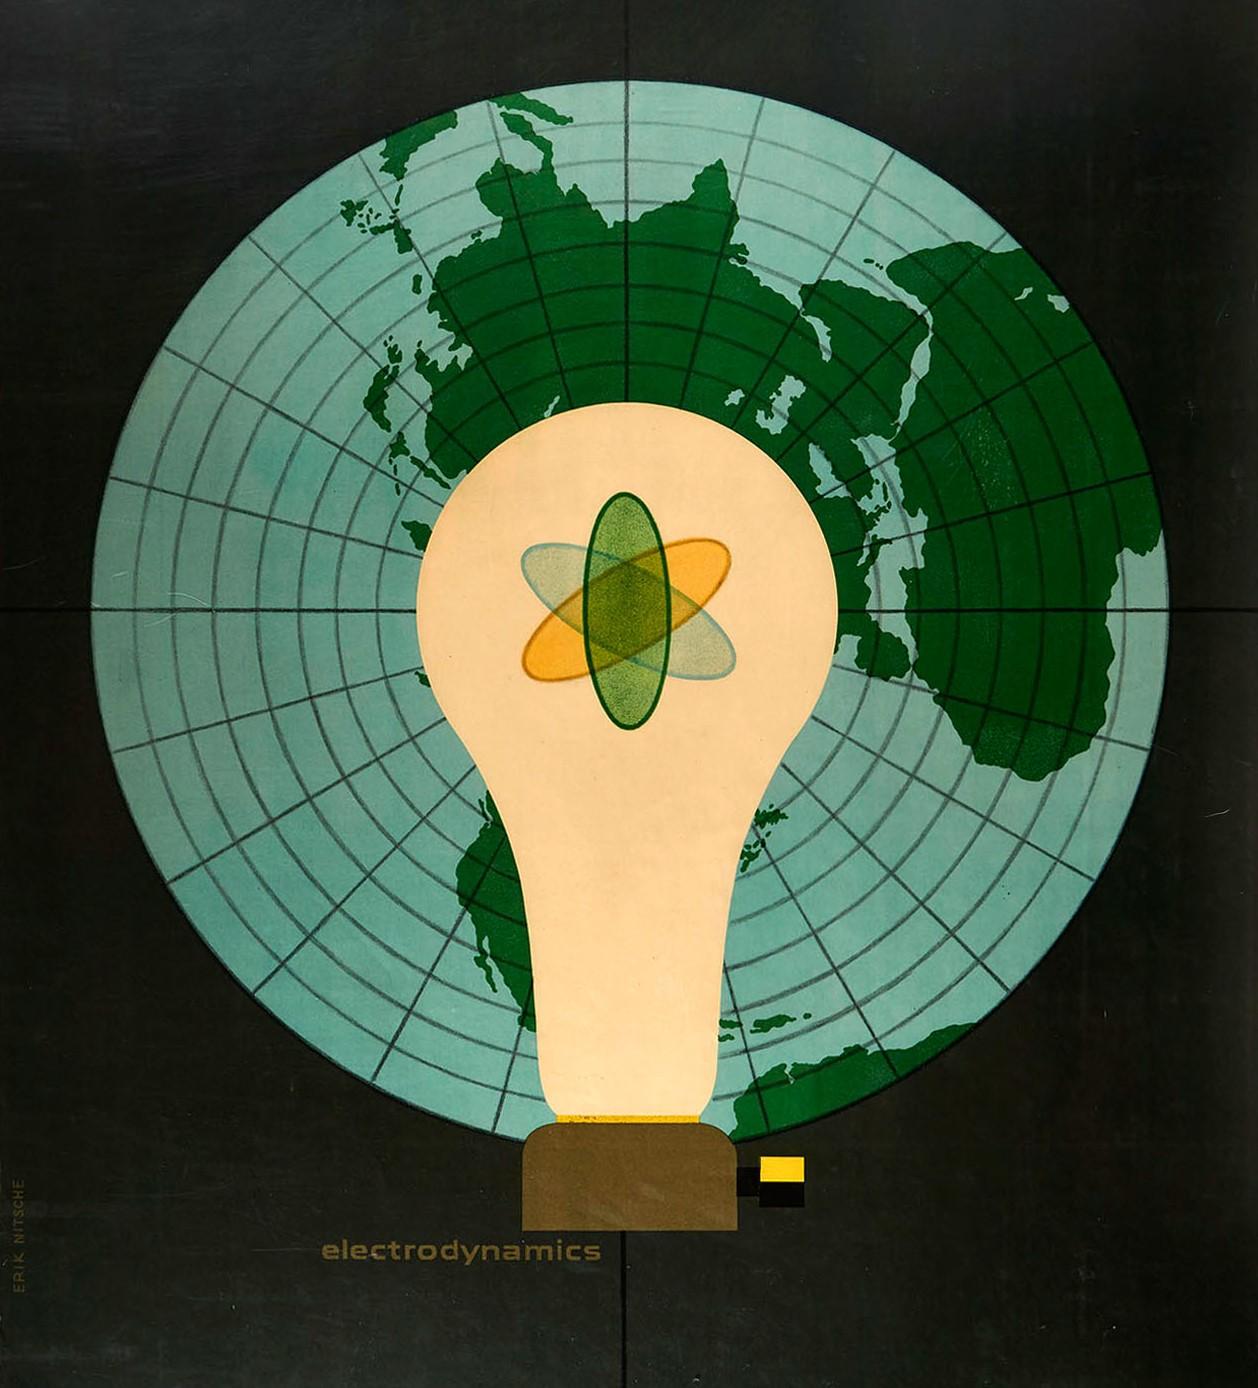 Originales altes General Dynamics-Plakat des Illustrators, Typografen und Grafikdesigners Erik Nitsche (1908-1998), das für die Elektrodynamik wirbt. Großartige Illustration mit dem Atomsymbol in einer Glühbirne vor einer Weltkarte auf grauem